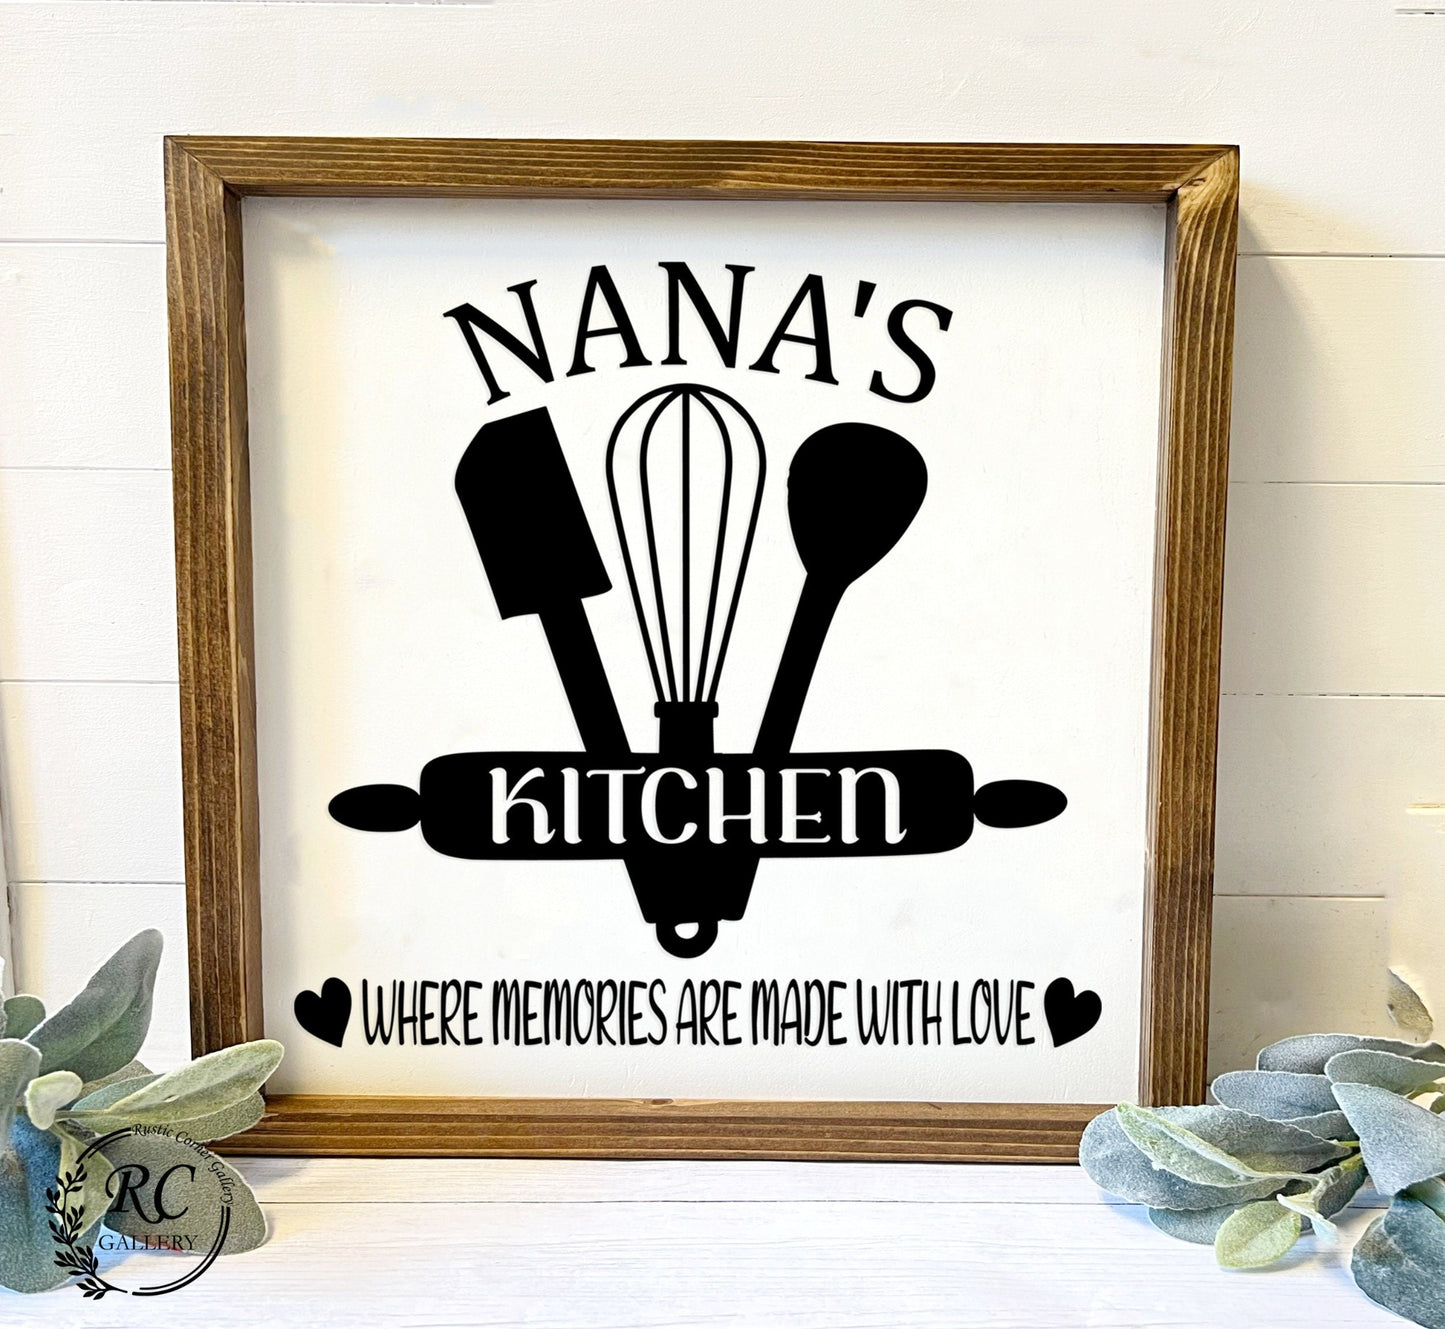 Mama's kitchen | Nana's kitchen farmhouse kitchen wood signs.